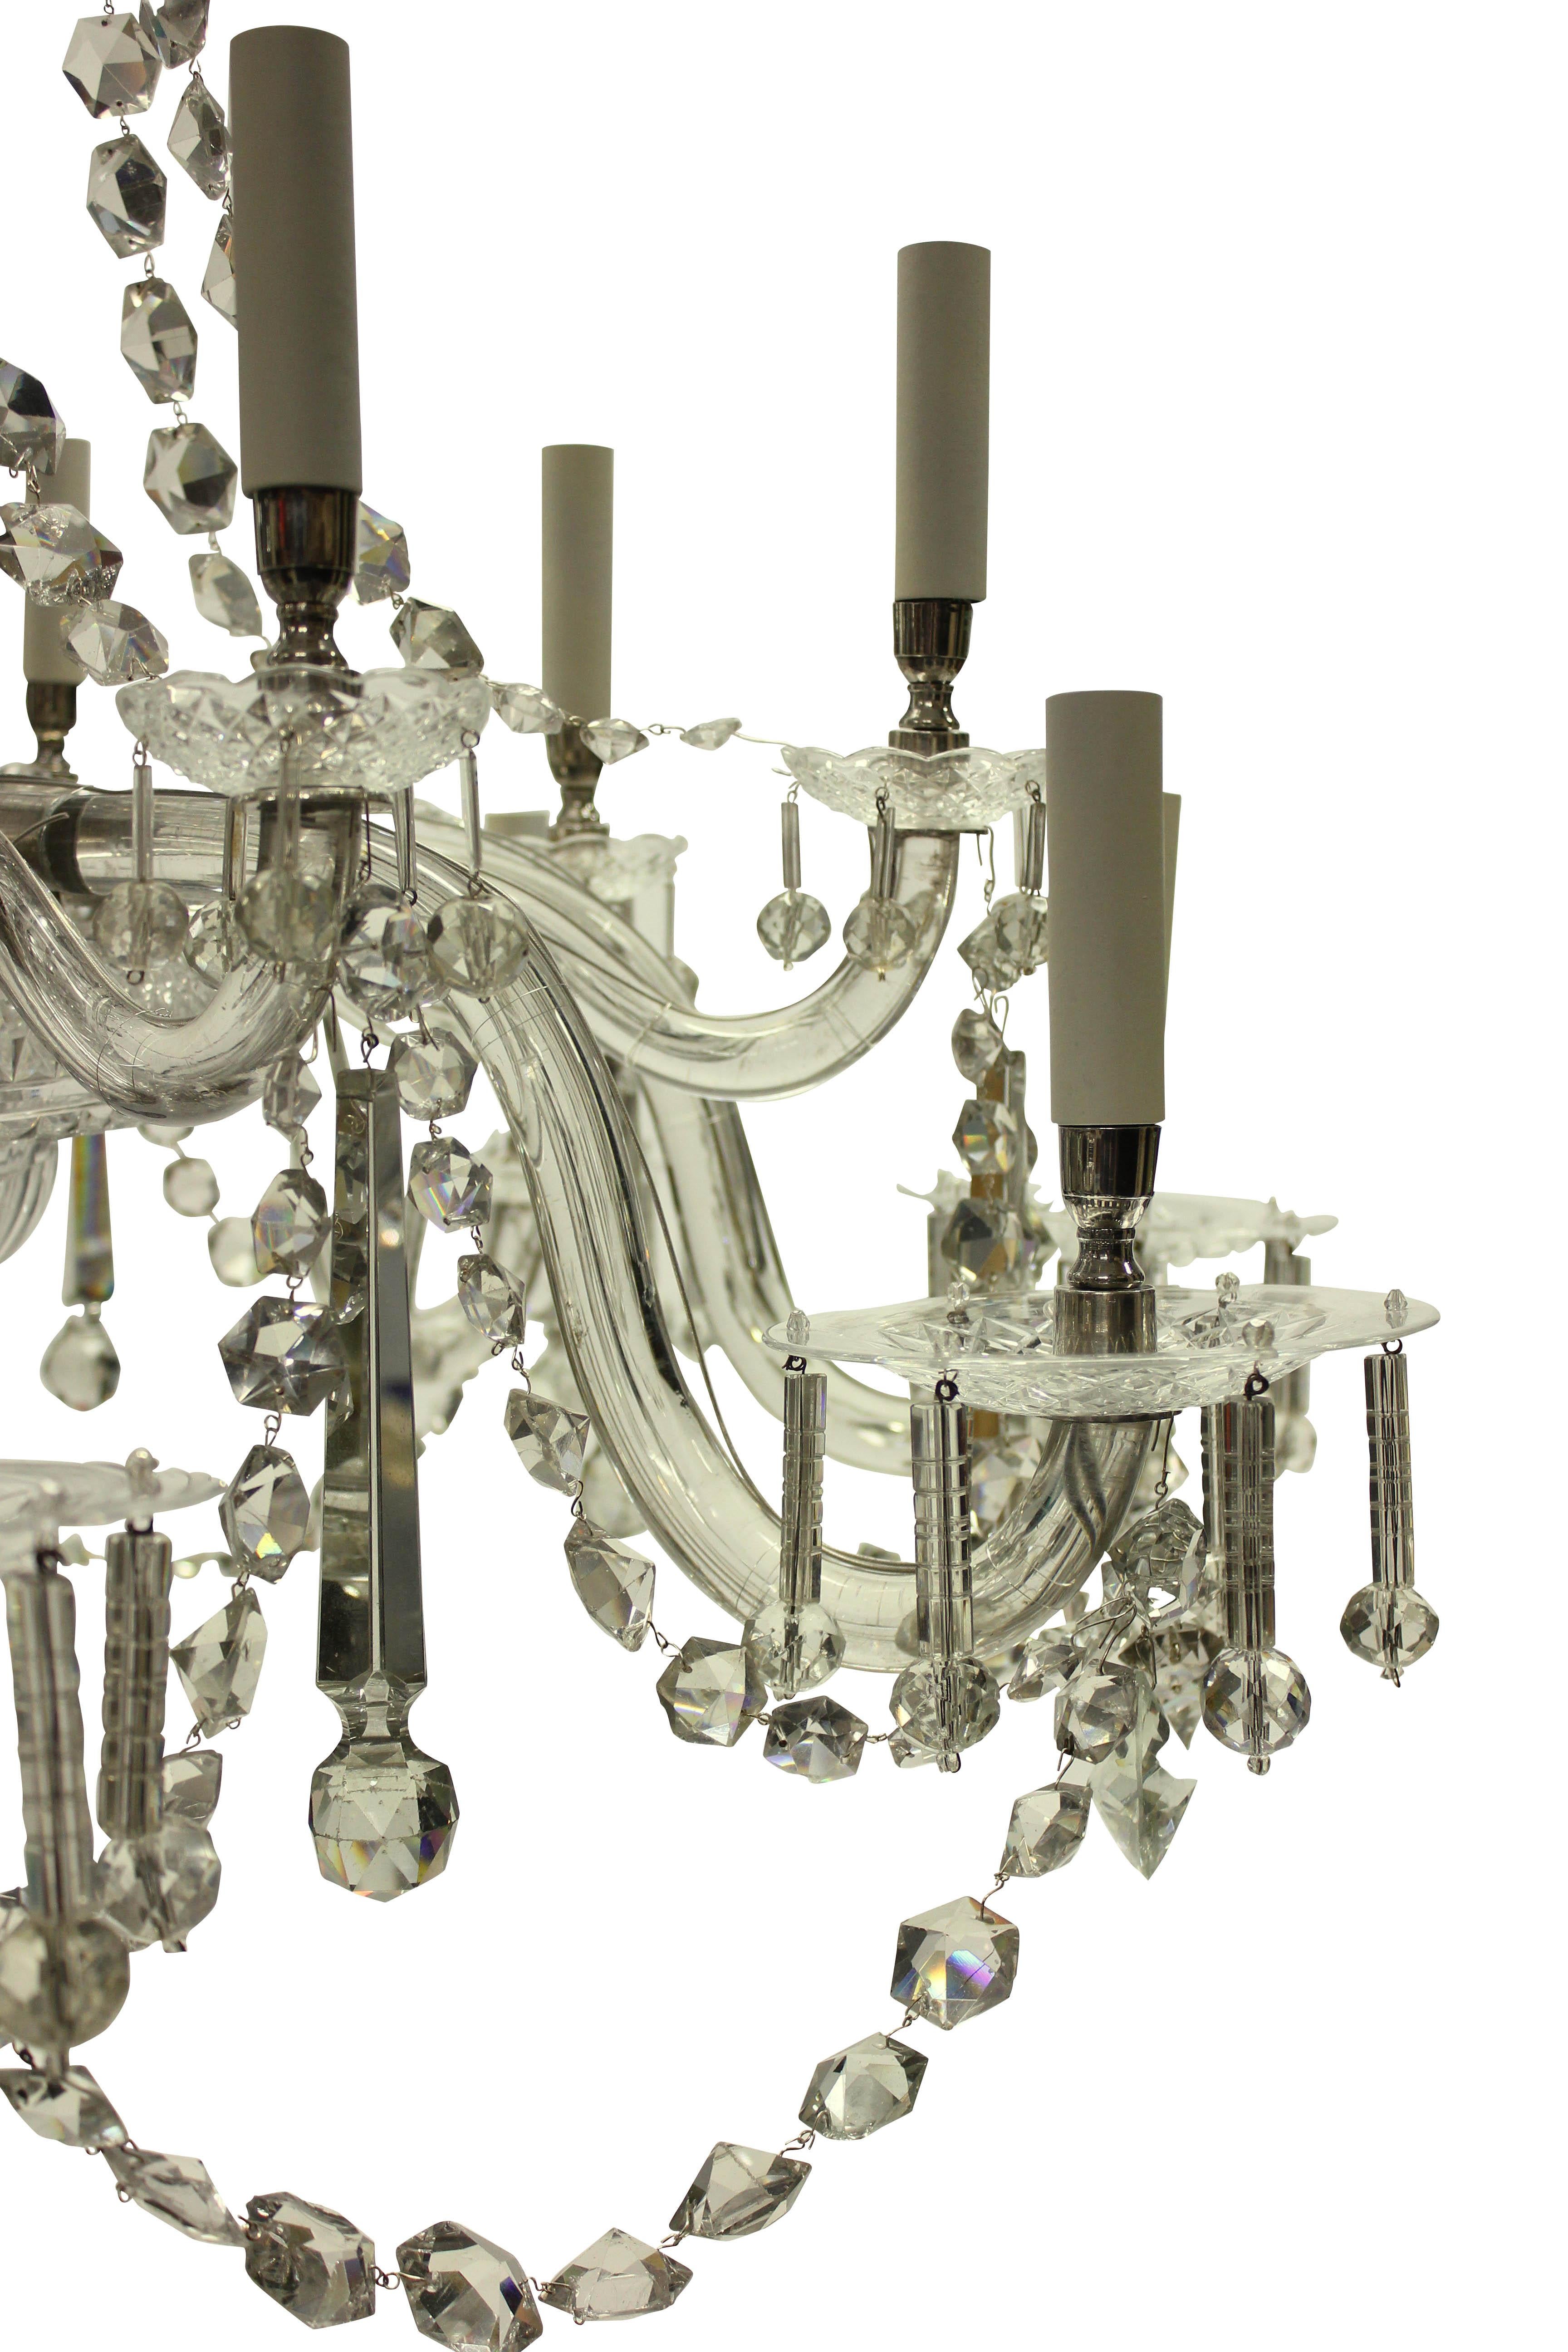 cut glass chandeliers